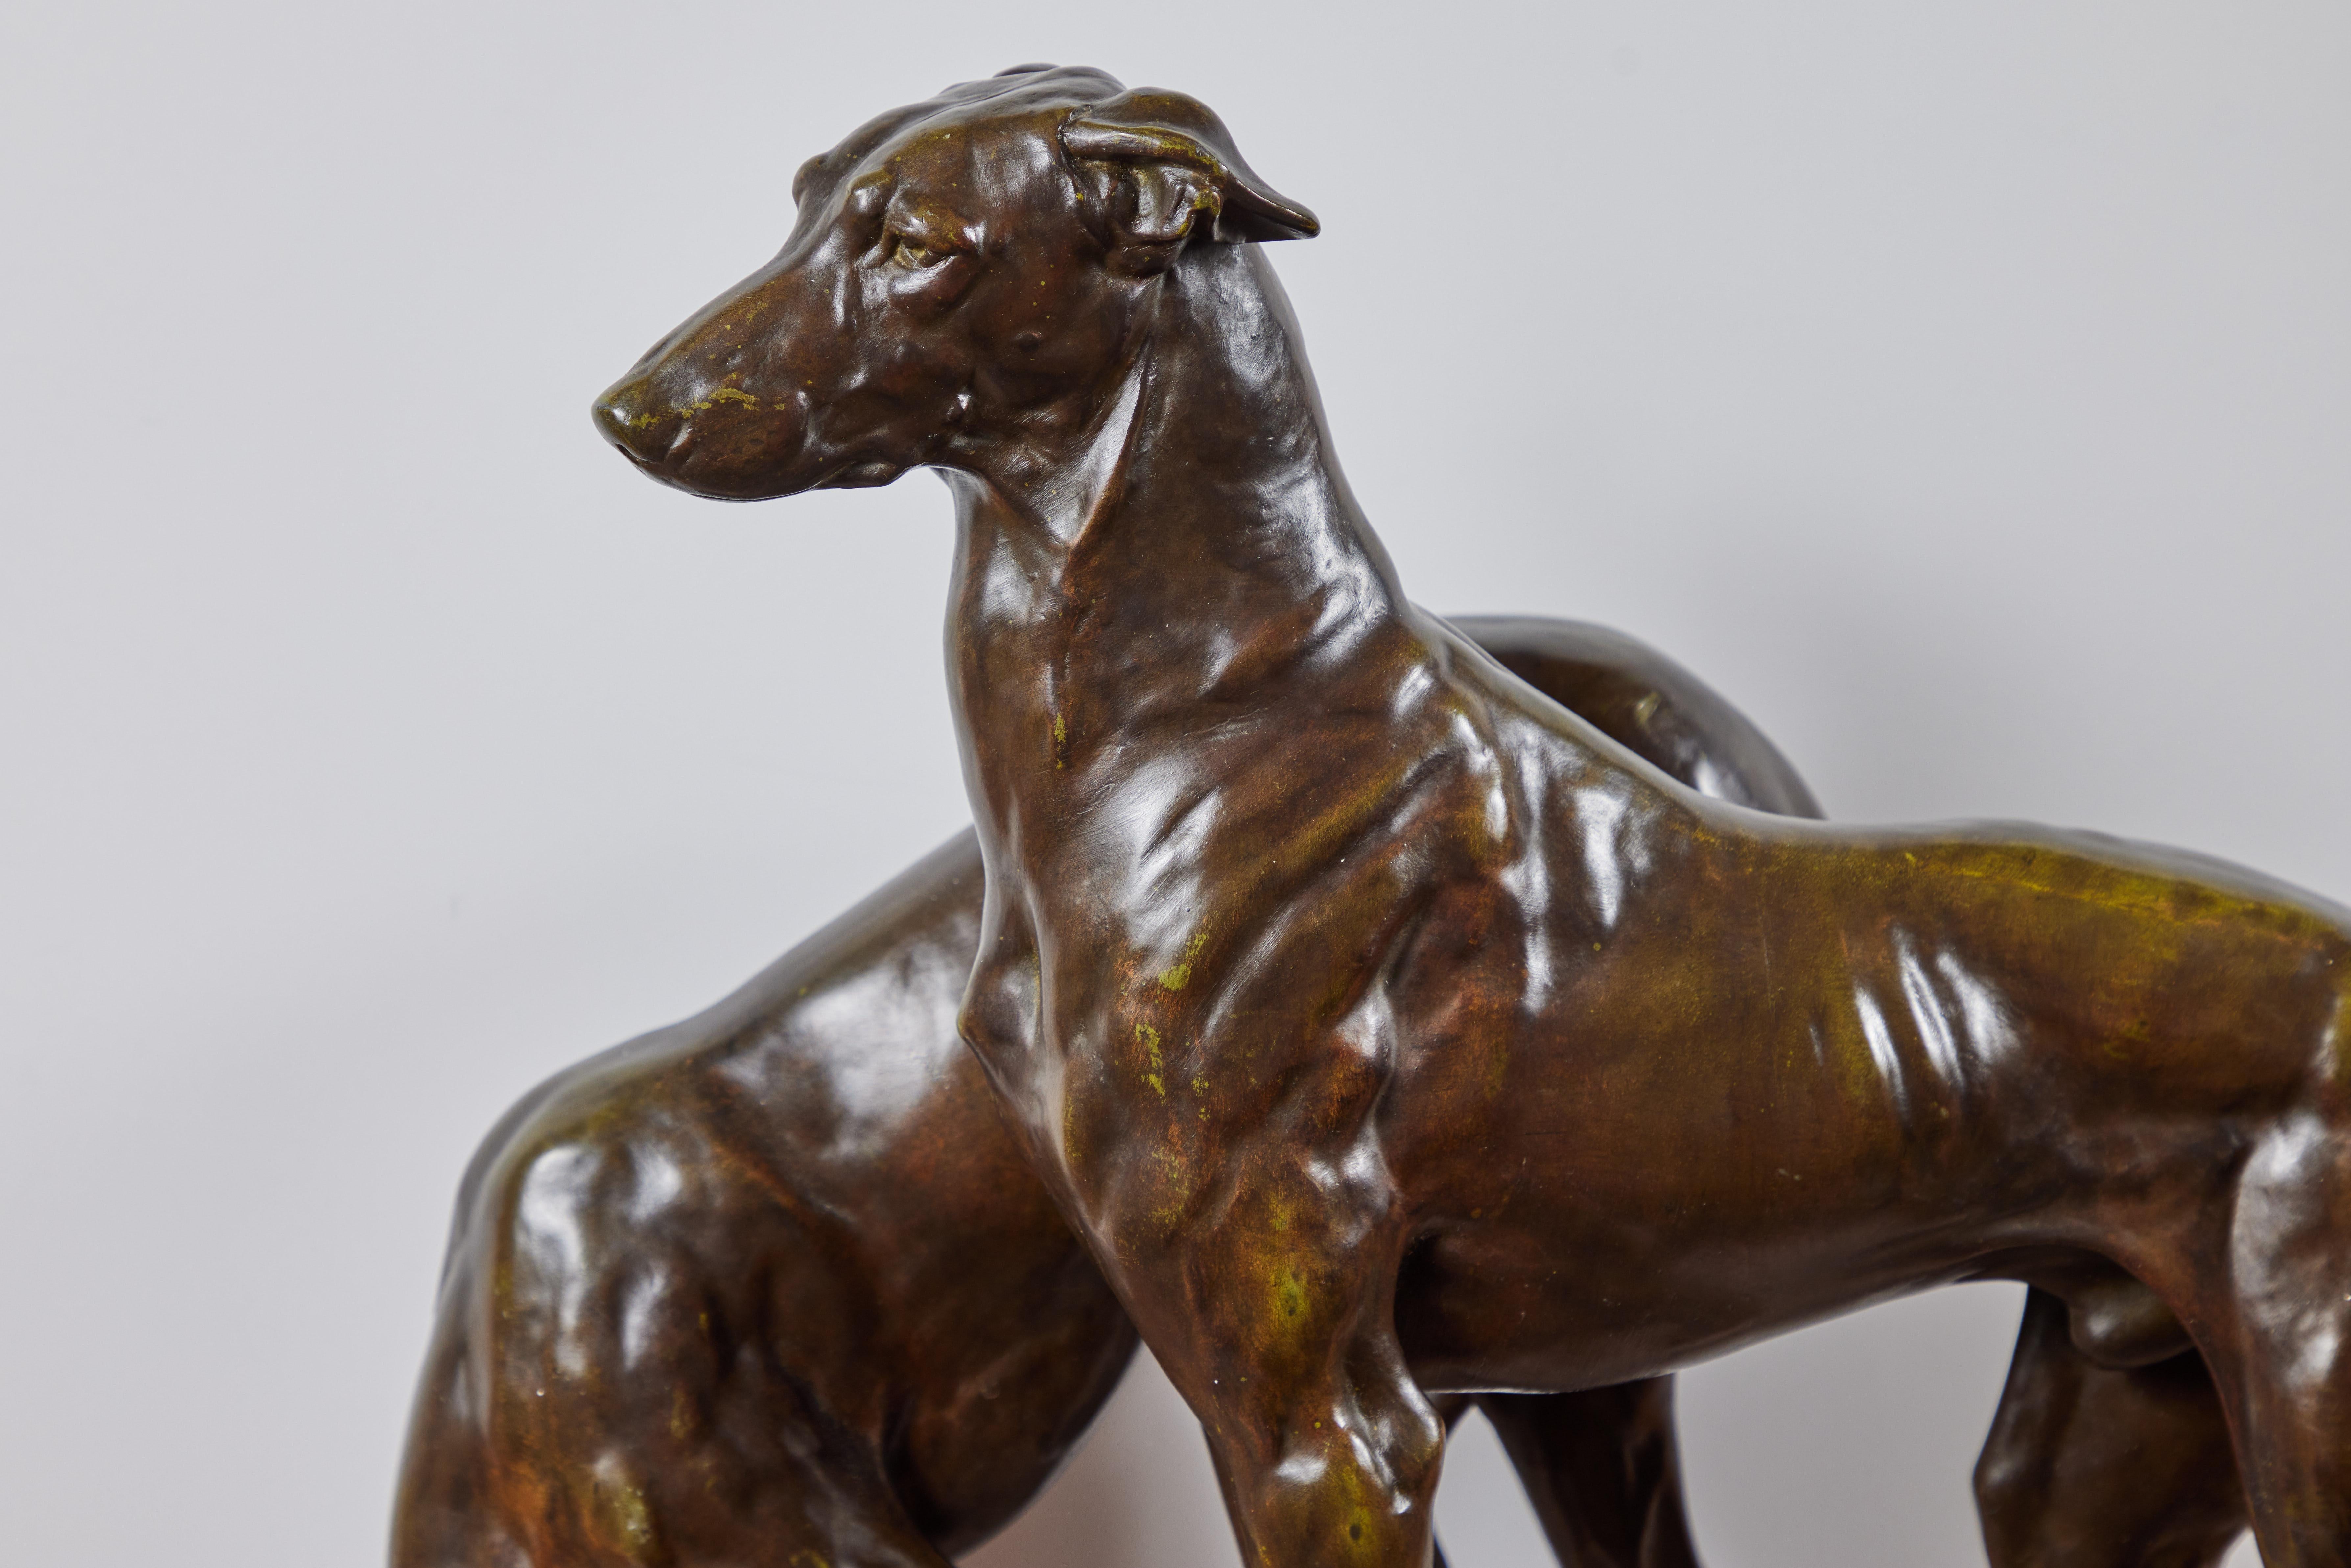 Une élégante paire de chiens de chasse en bronze patiné des années 1920, initialement conçue et créée par le maître sculpteur J. Eleg. Masson (1871-1932). Cette édition a été coulée dans la célèbre fonderie d'art Le Verrier à Paris. Montée sur un